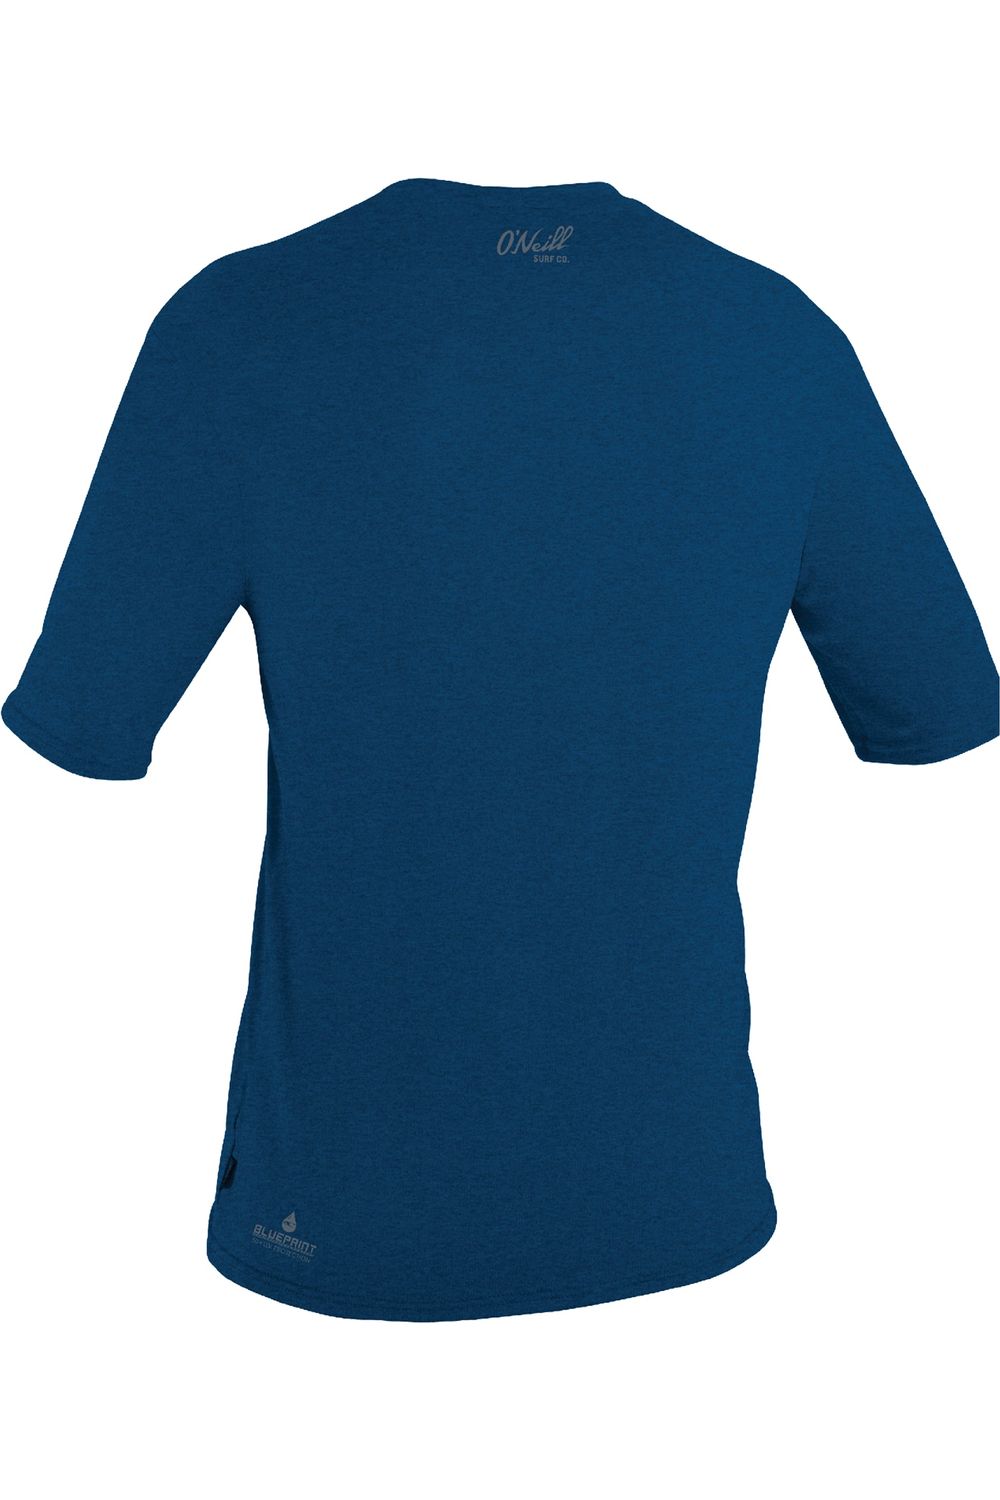 O'Neill Blueprint Ss Sun Shirt Wetsuit Deep Sea